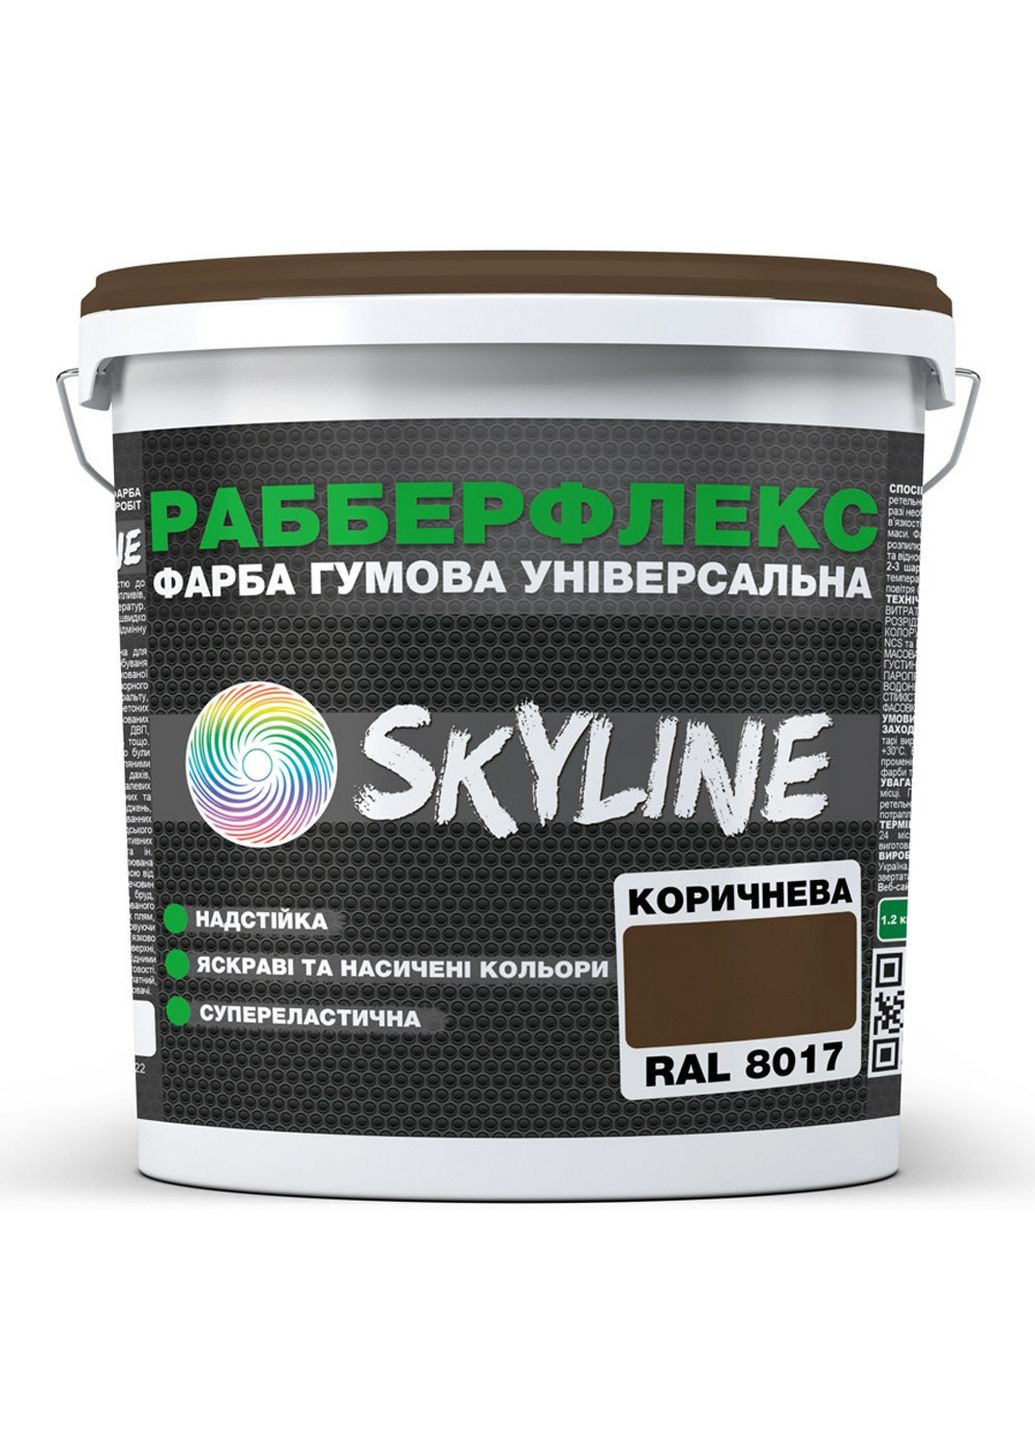 Краска резиновая суперэластичная сверхстойкая «РабберФлекс» 3,6 кг SkyLine (289461366)